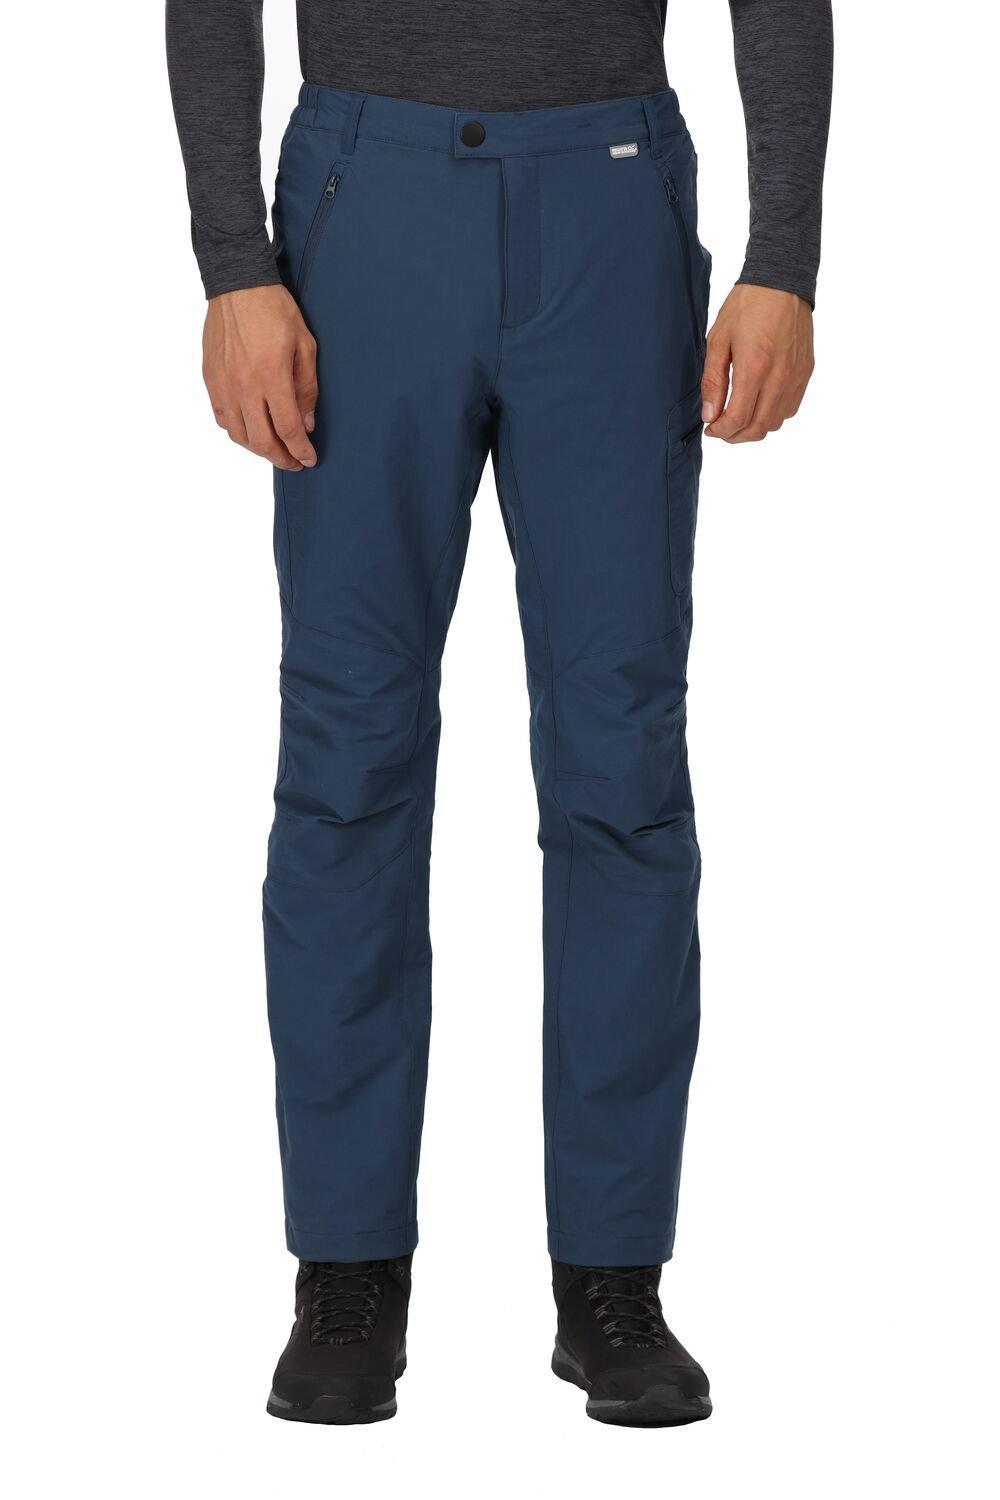 Прогулочные брюки Highton Winter на теплой подкладке Regatta, синий